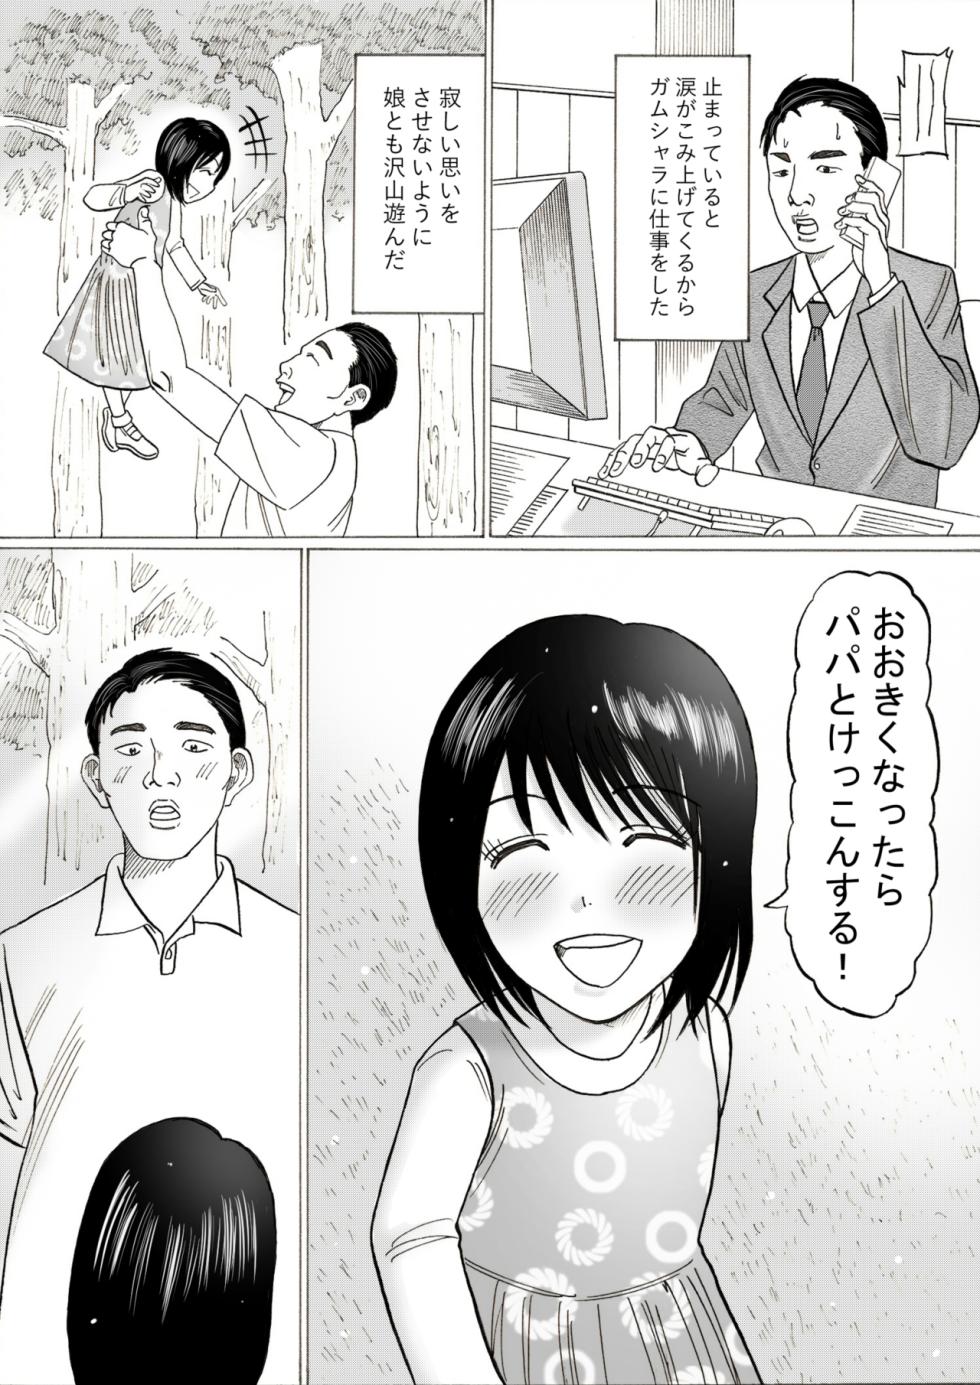 [Kenkyo sunao meteo] Risato - Page 3